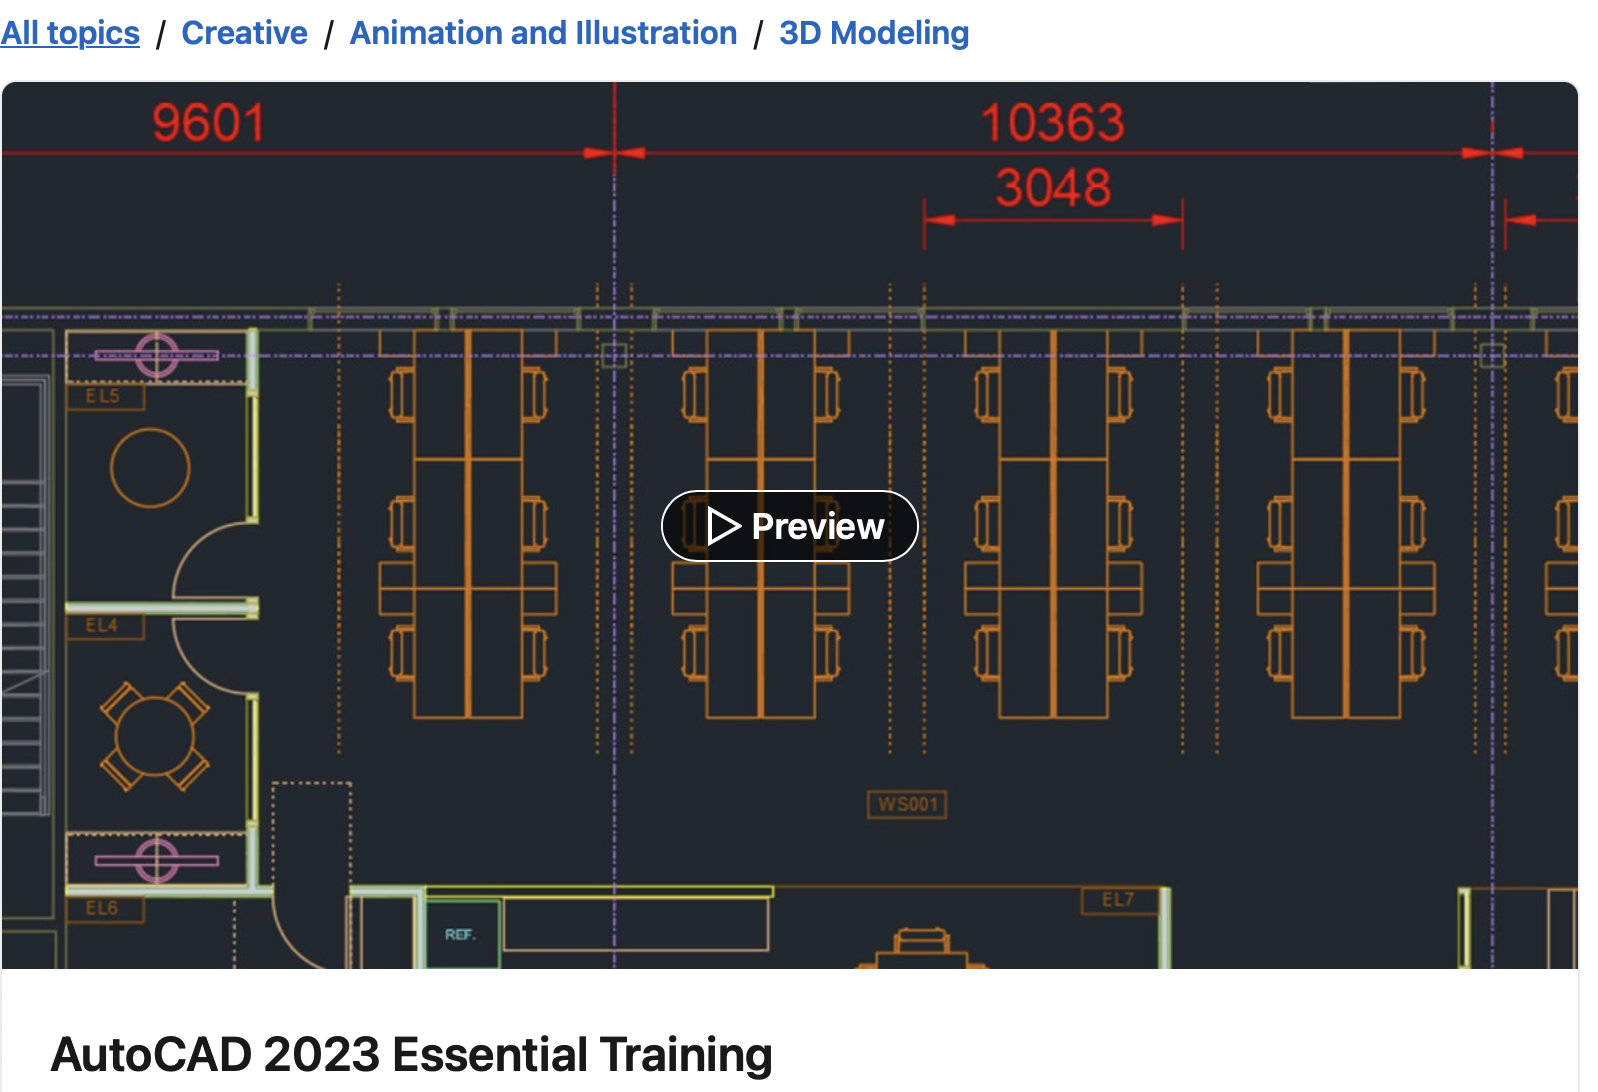 AutoCAD 2023 Essential Training